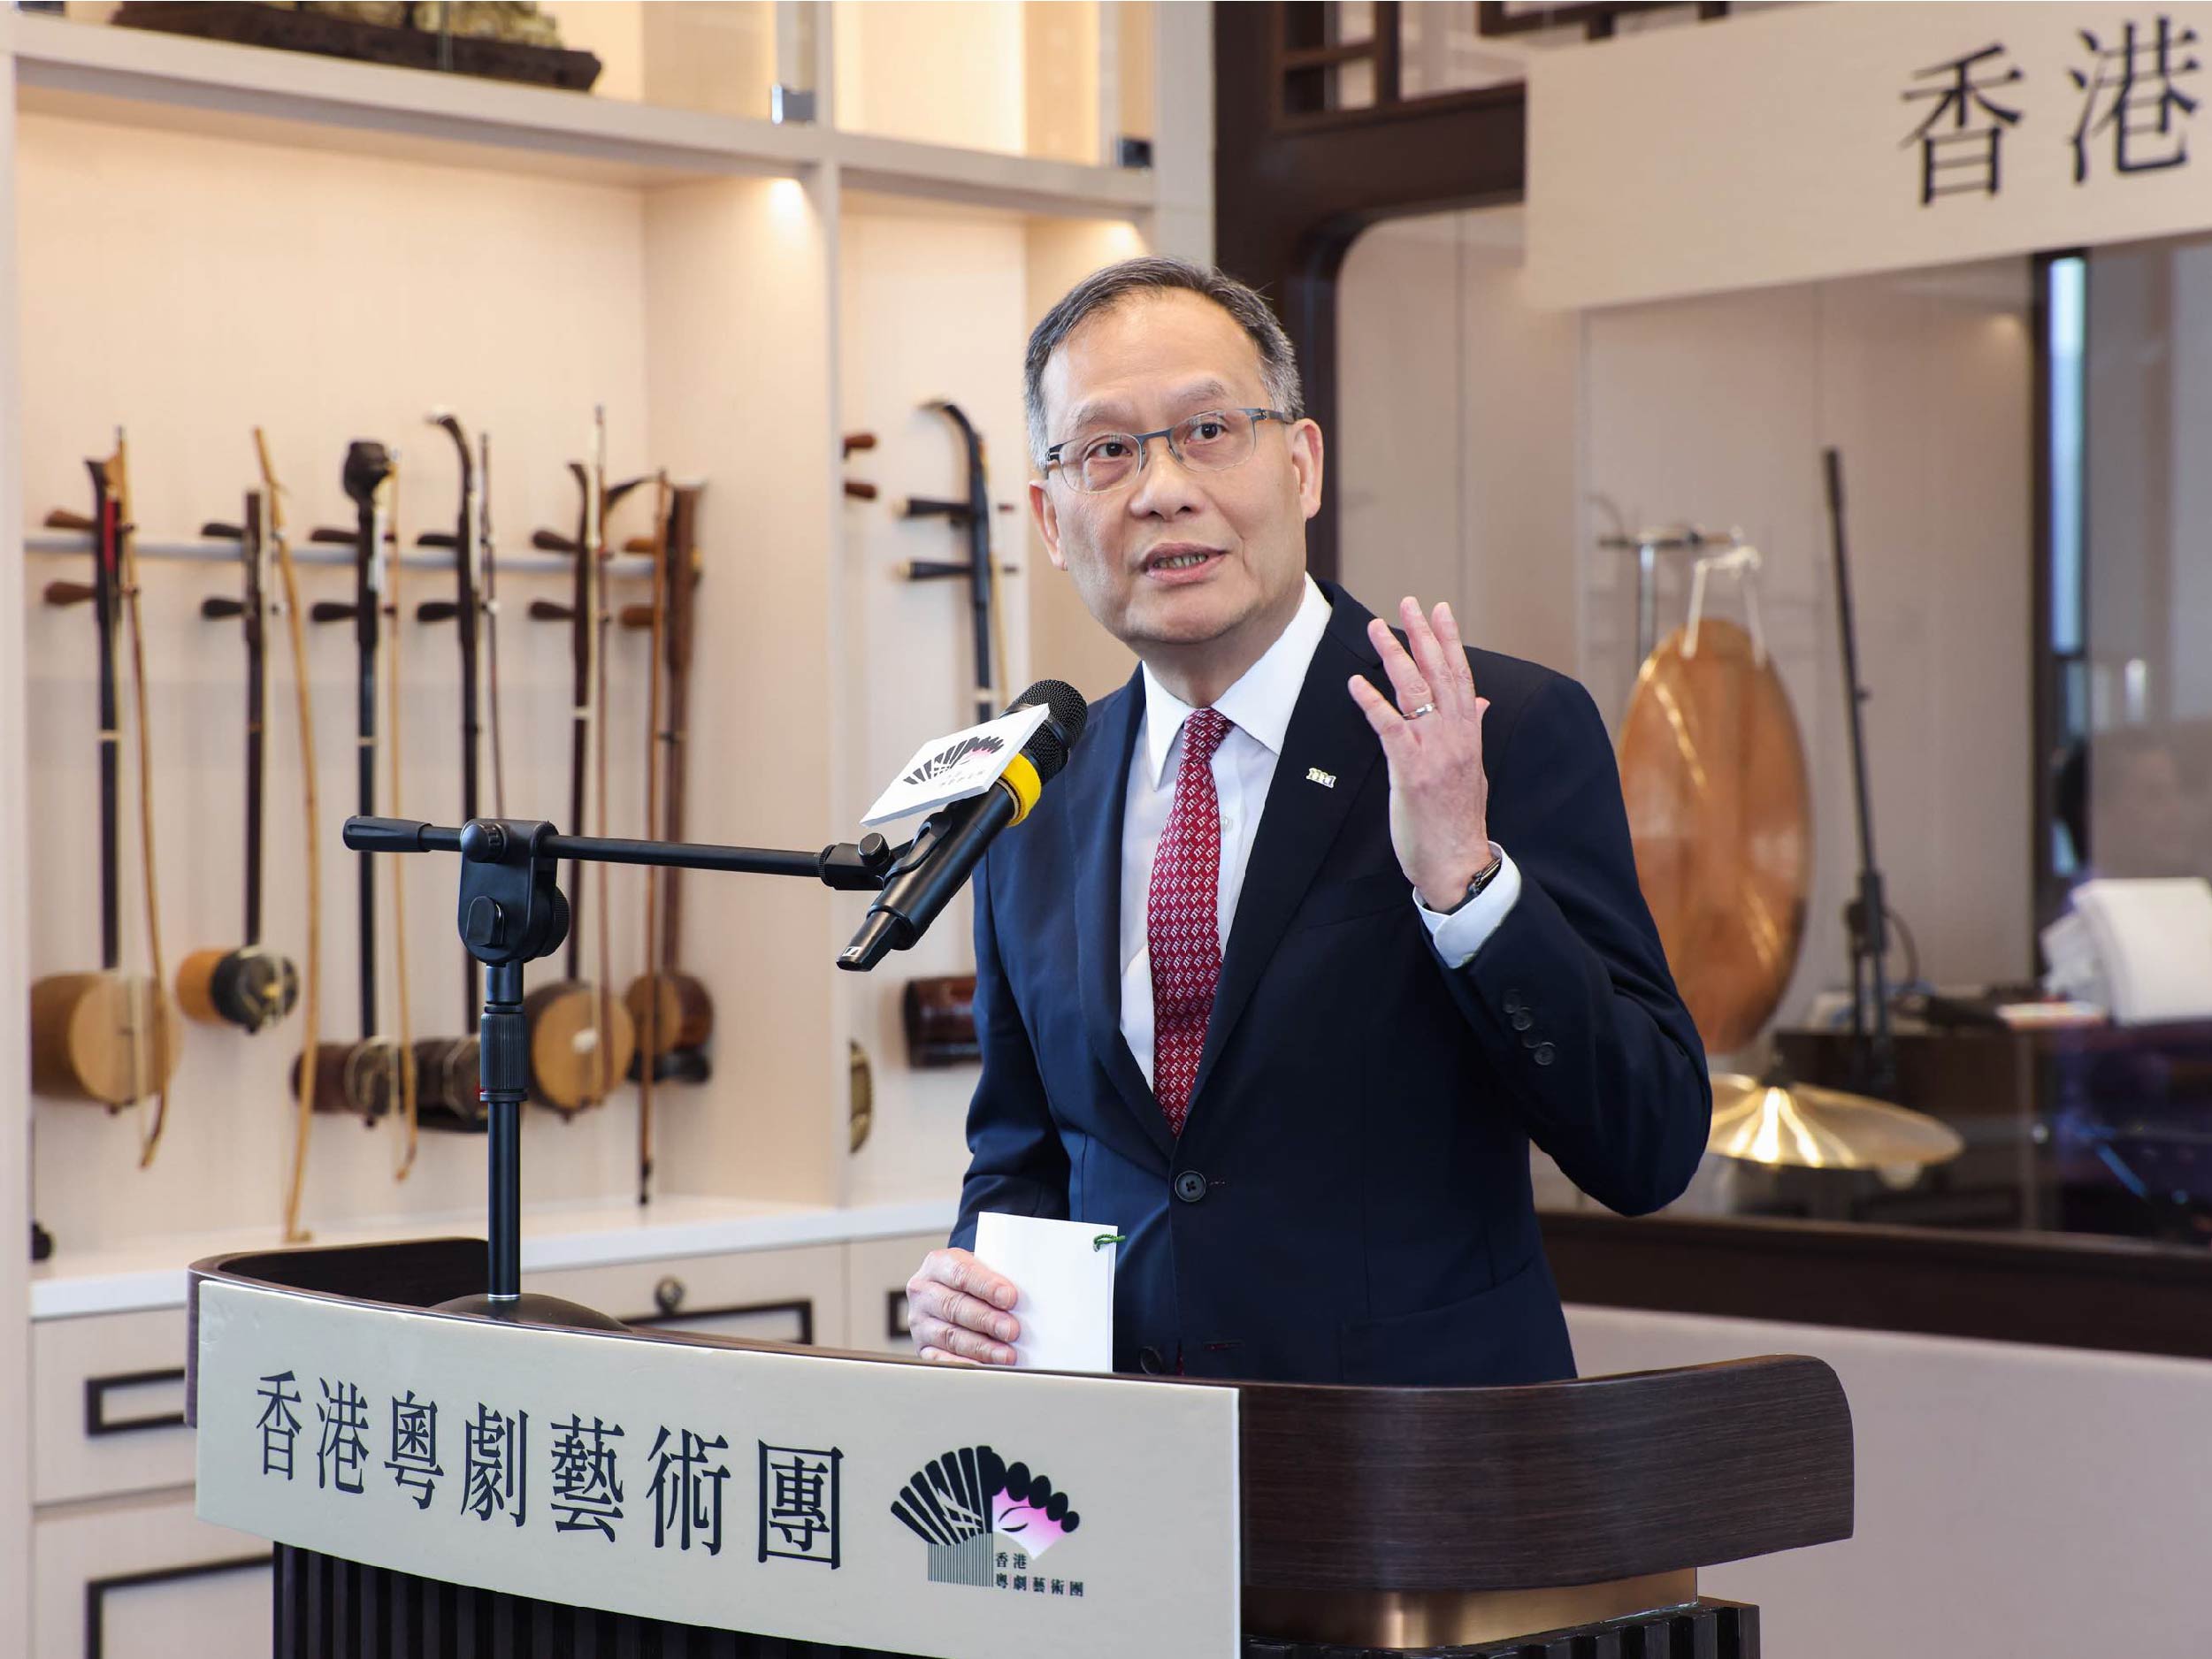 HKMU President Prof. Paul Lam Kwan-sing